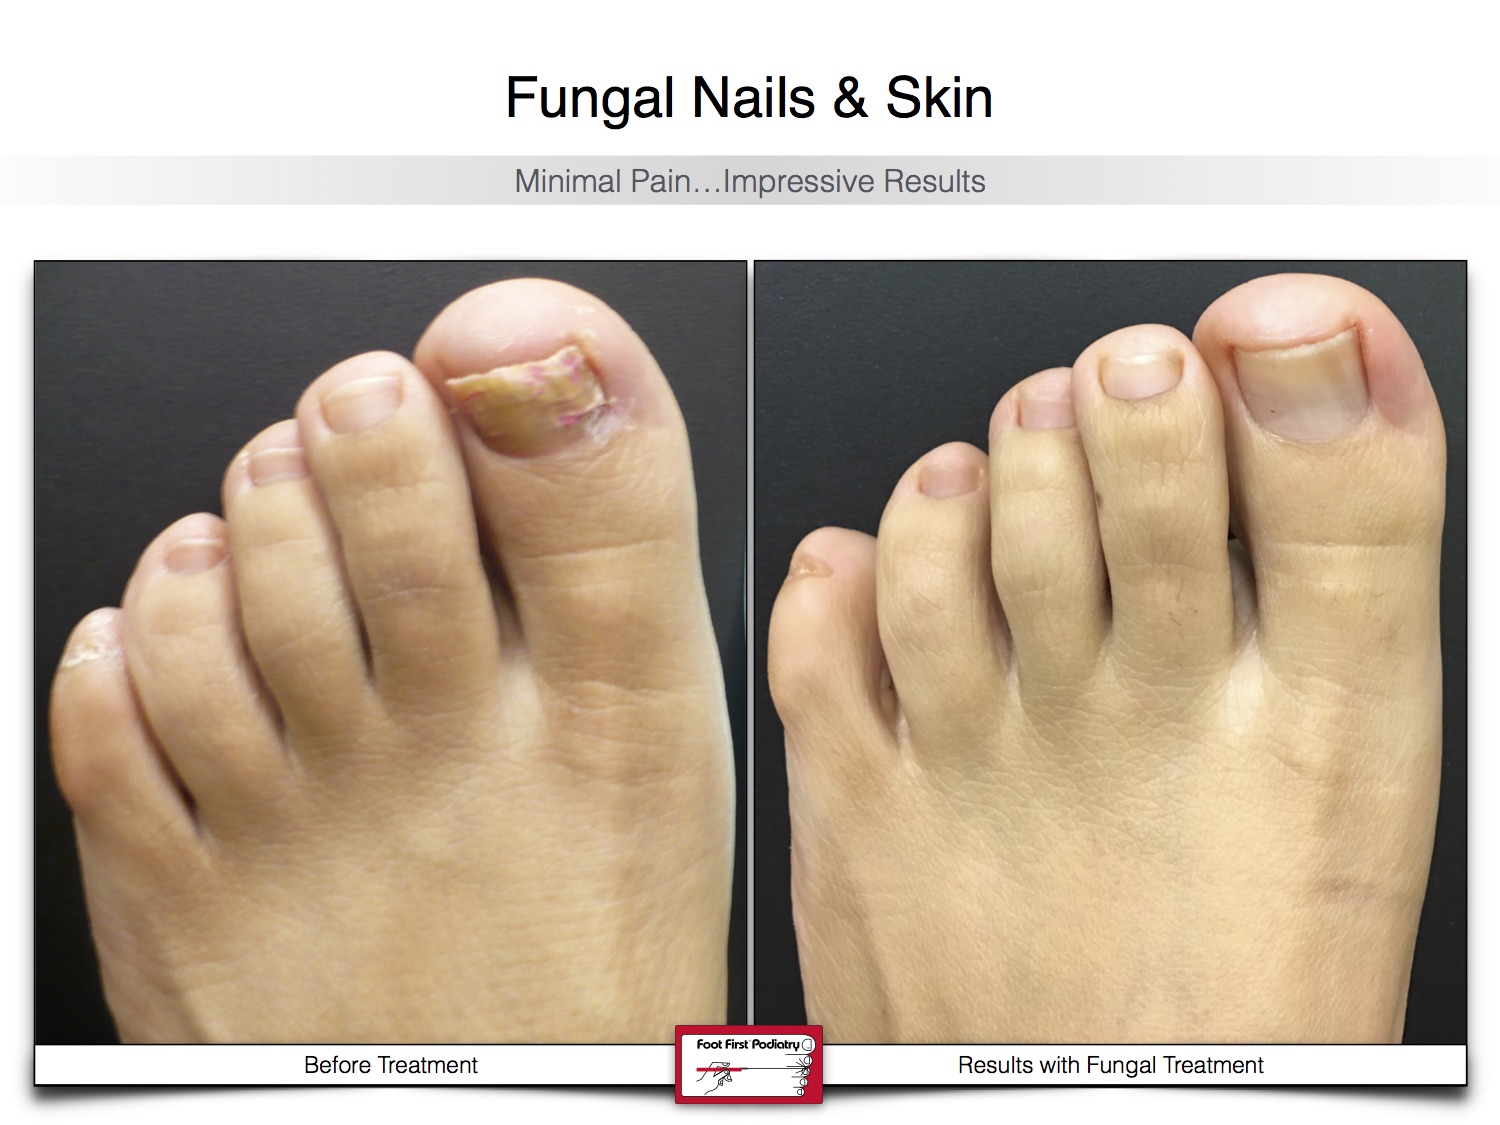 Fungal Nails & Skin 02.16 26.jpg